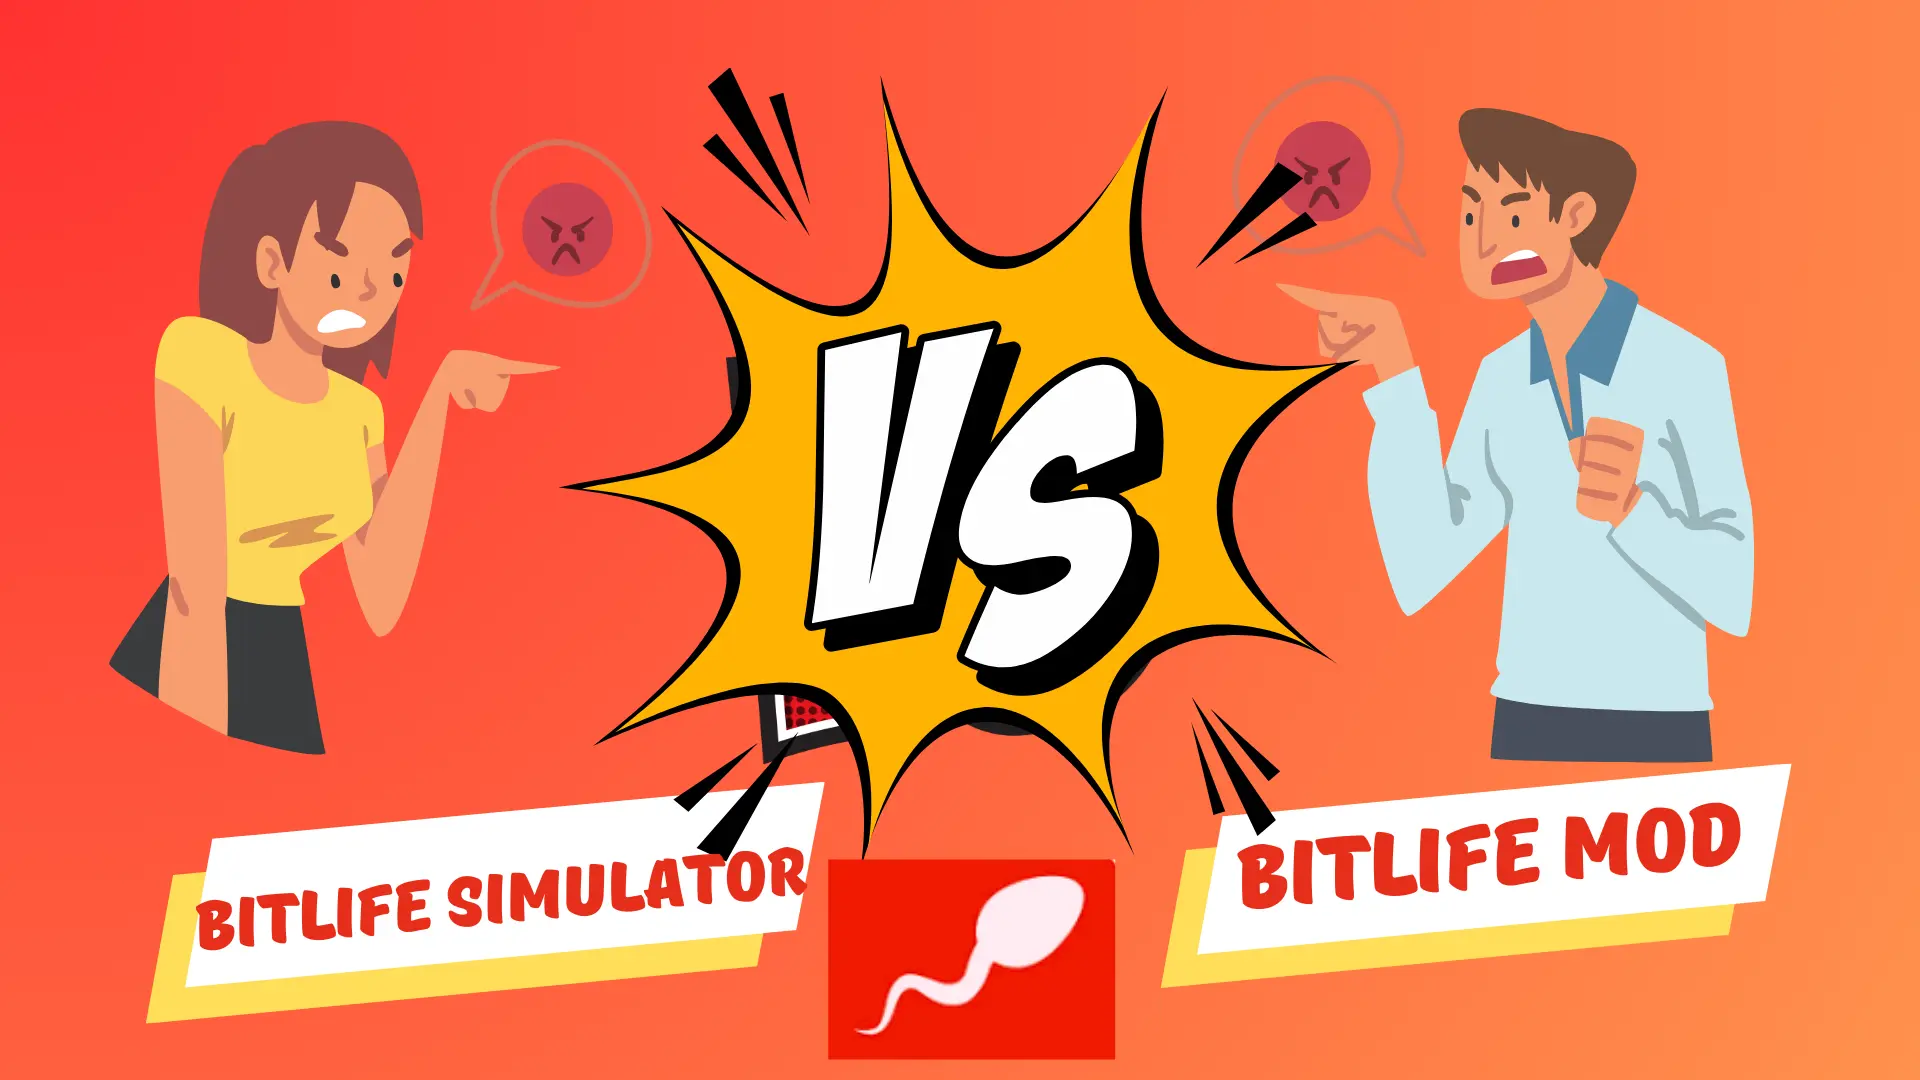 bitlife simulator vs. bitlife mod